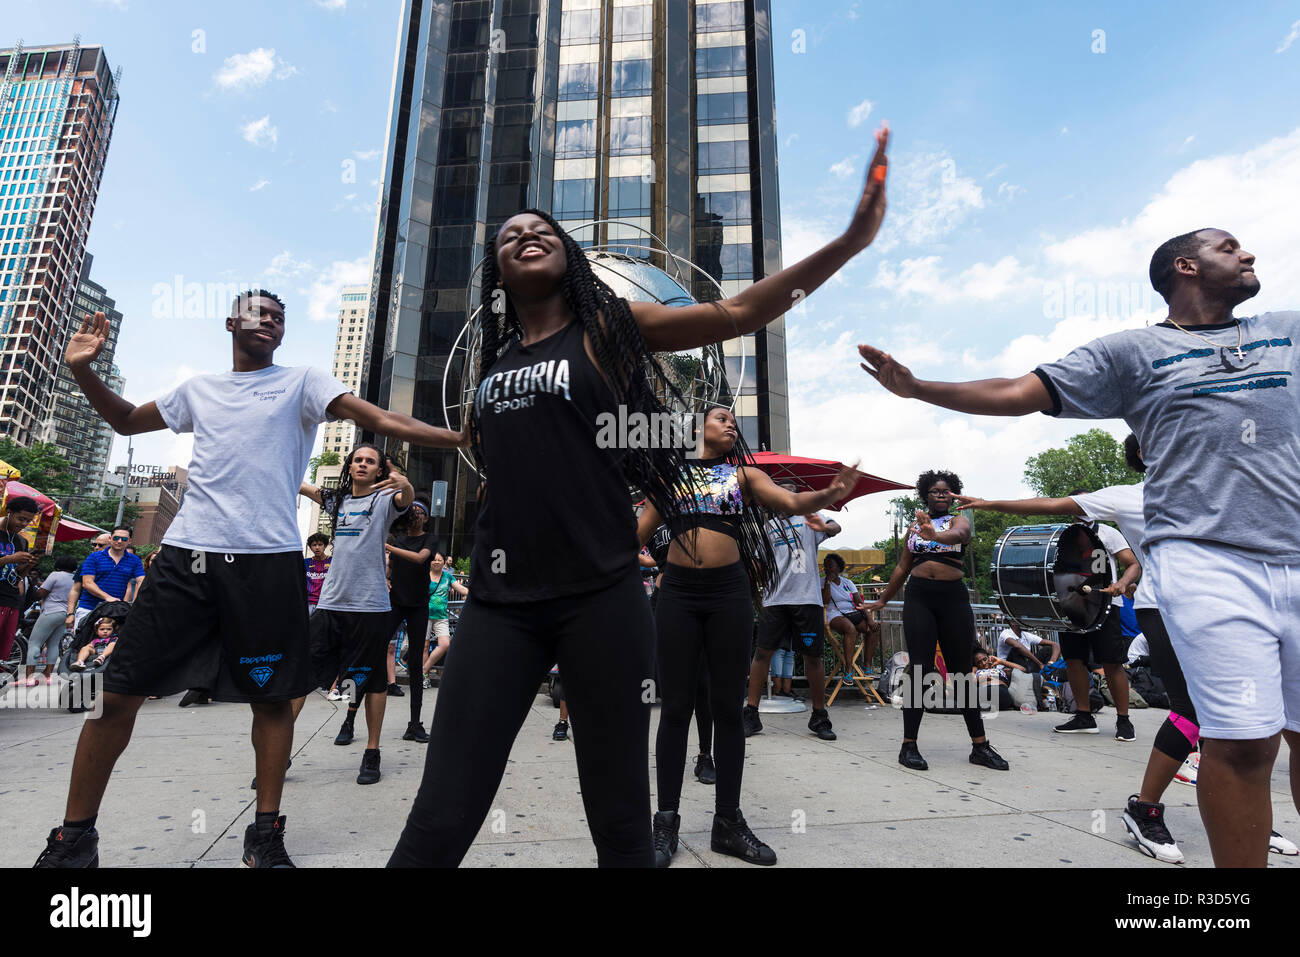 La ville de New York, USA - 25 juillet 2018 : la performance d'un groupe de danseurs et de percussionnistes dans la rue en face de l'hôtel Trump International Banque D'Images